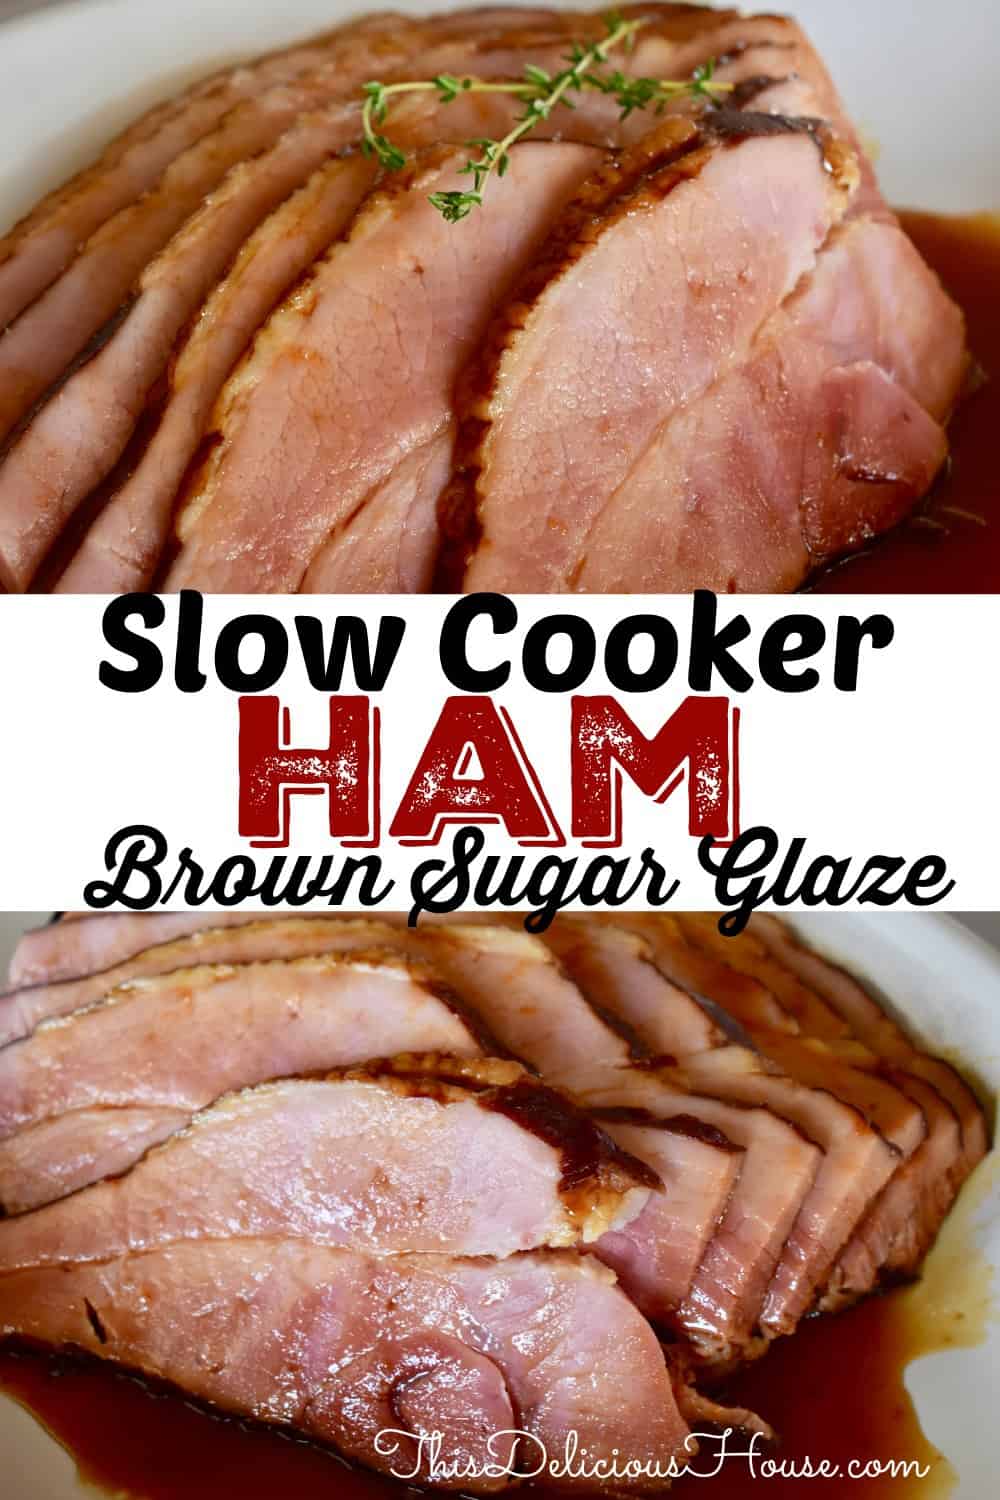 Slow Cooker ham 